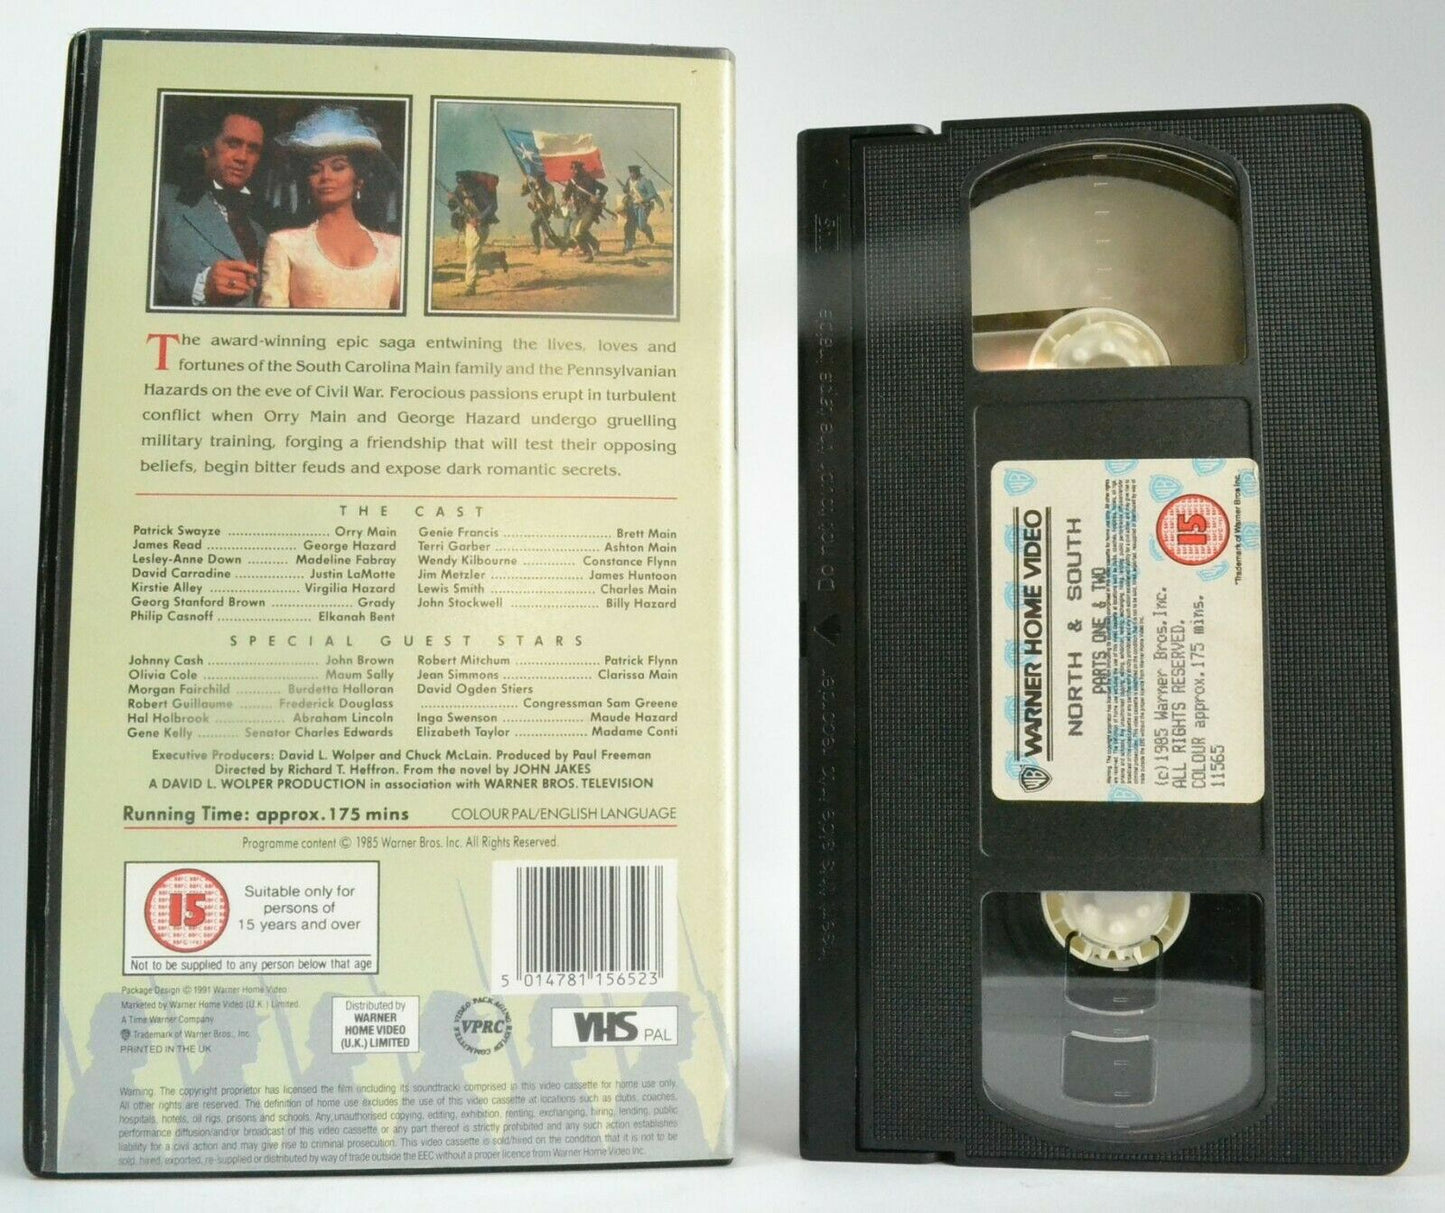 North & South (Parts 1/2) T.V. Mini-Series [War Drama] Patrick Swayze - Pal VHS-